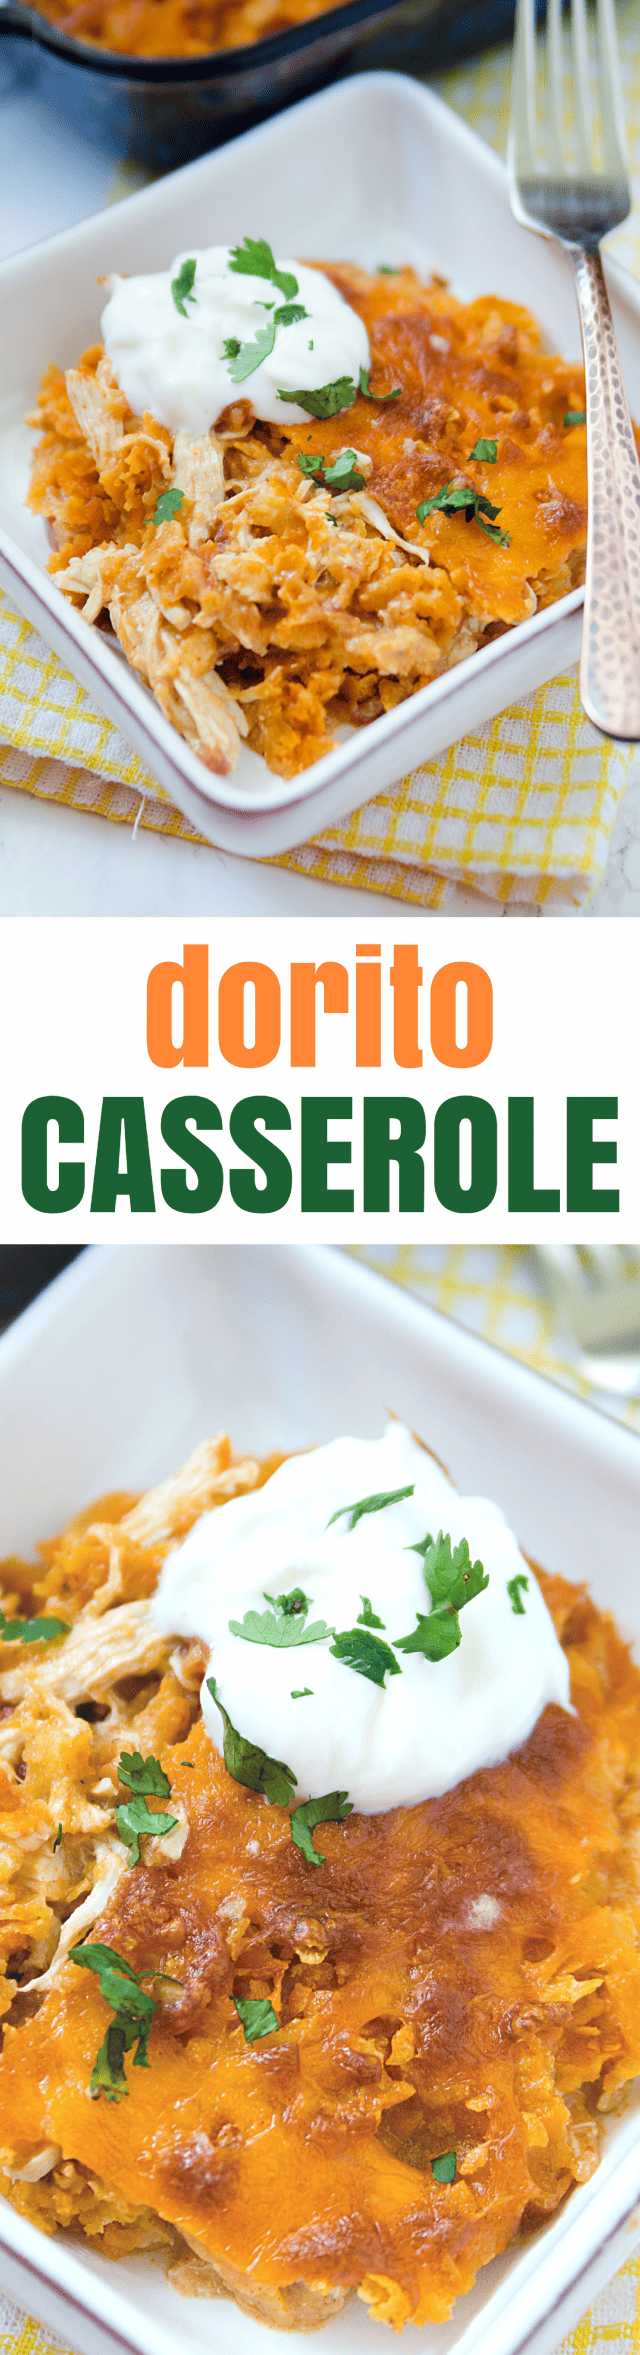 Easy Cheesy Mexican Dorito Casserole Recipe